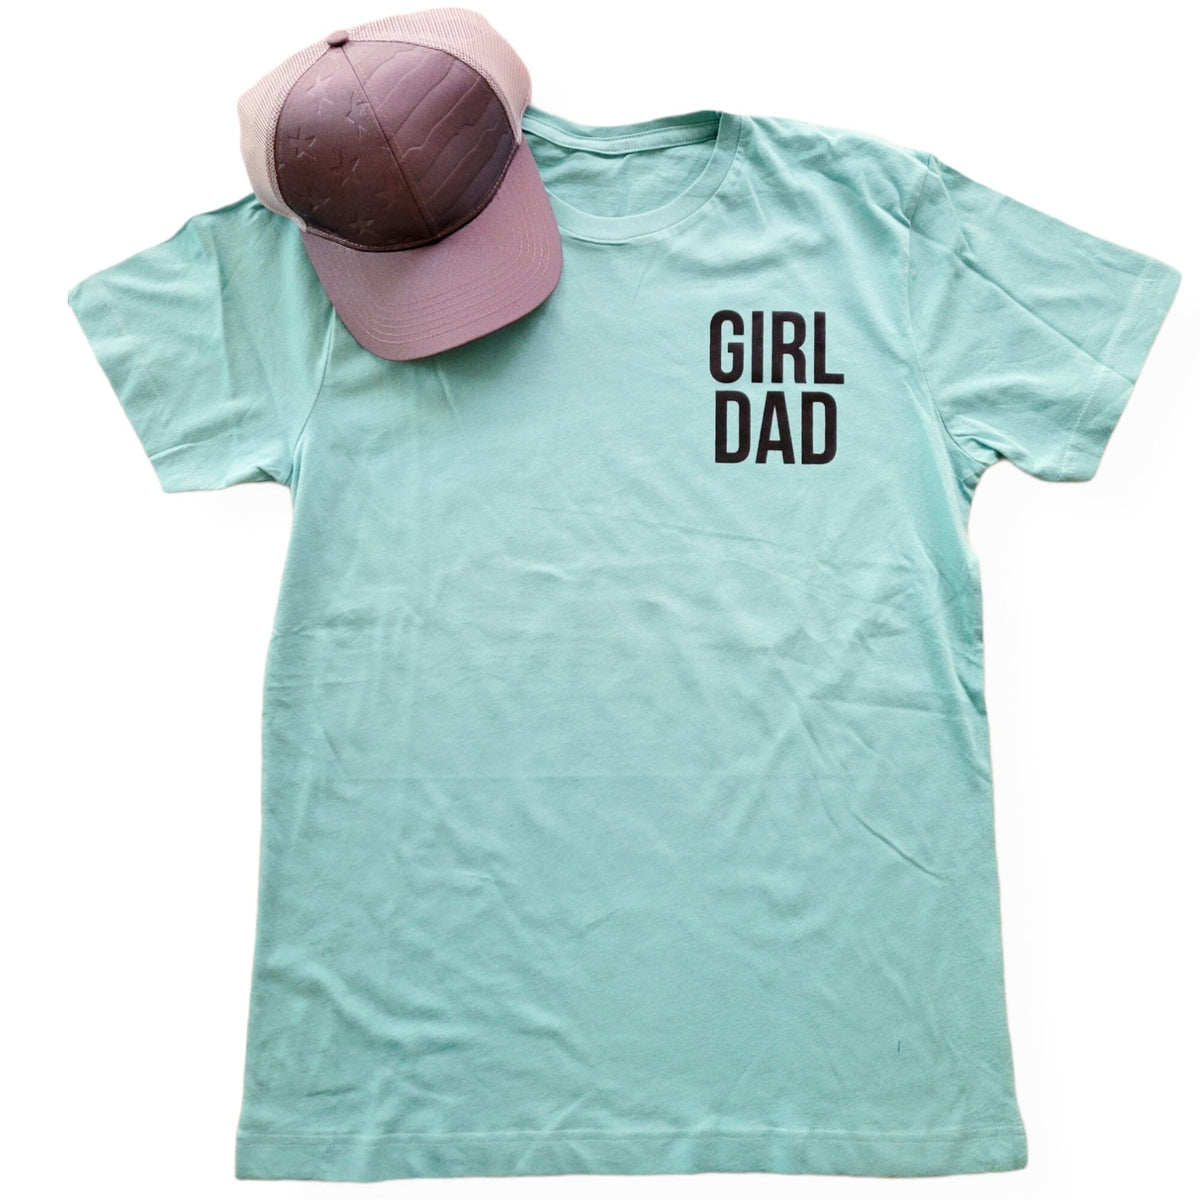 Girl Dad Teal T-Shirt